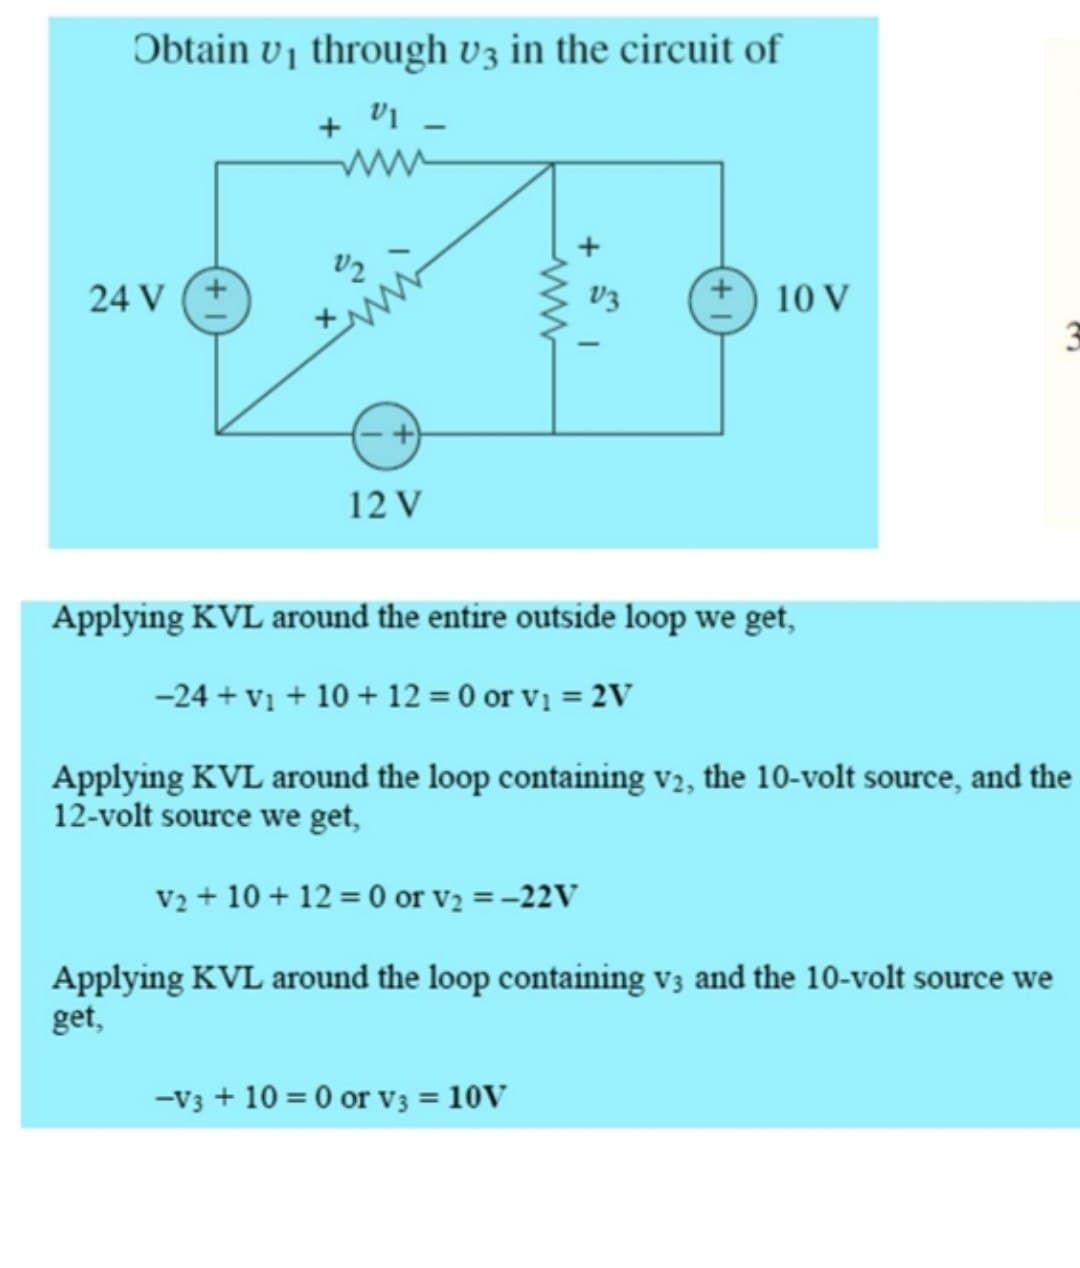 Obtain v₁ through v3 in the circuit of
V1 -
24 V
12
12 V
www
V3
10 V
Applying KVL around the entire outside loop we get,
-24+ v₁ + 10 + 12 = 0 or v₁ = 2V
Applying KVL around the loop containing V2, the 10-volt source, and the
12-volt source we get,
V2 + 10+12=0 or v₂ = -22V
Applying KVL around the loop containing v3 and the 10-volt source we
get,
-V3 + 10 = 0 or V3 = 10V